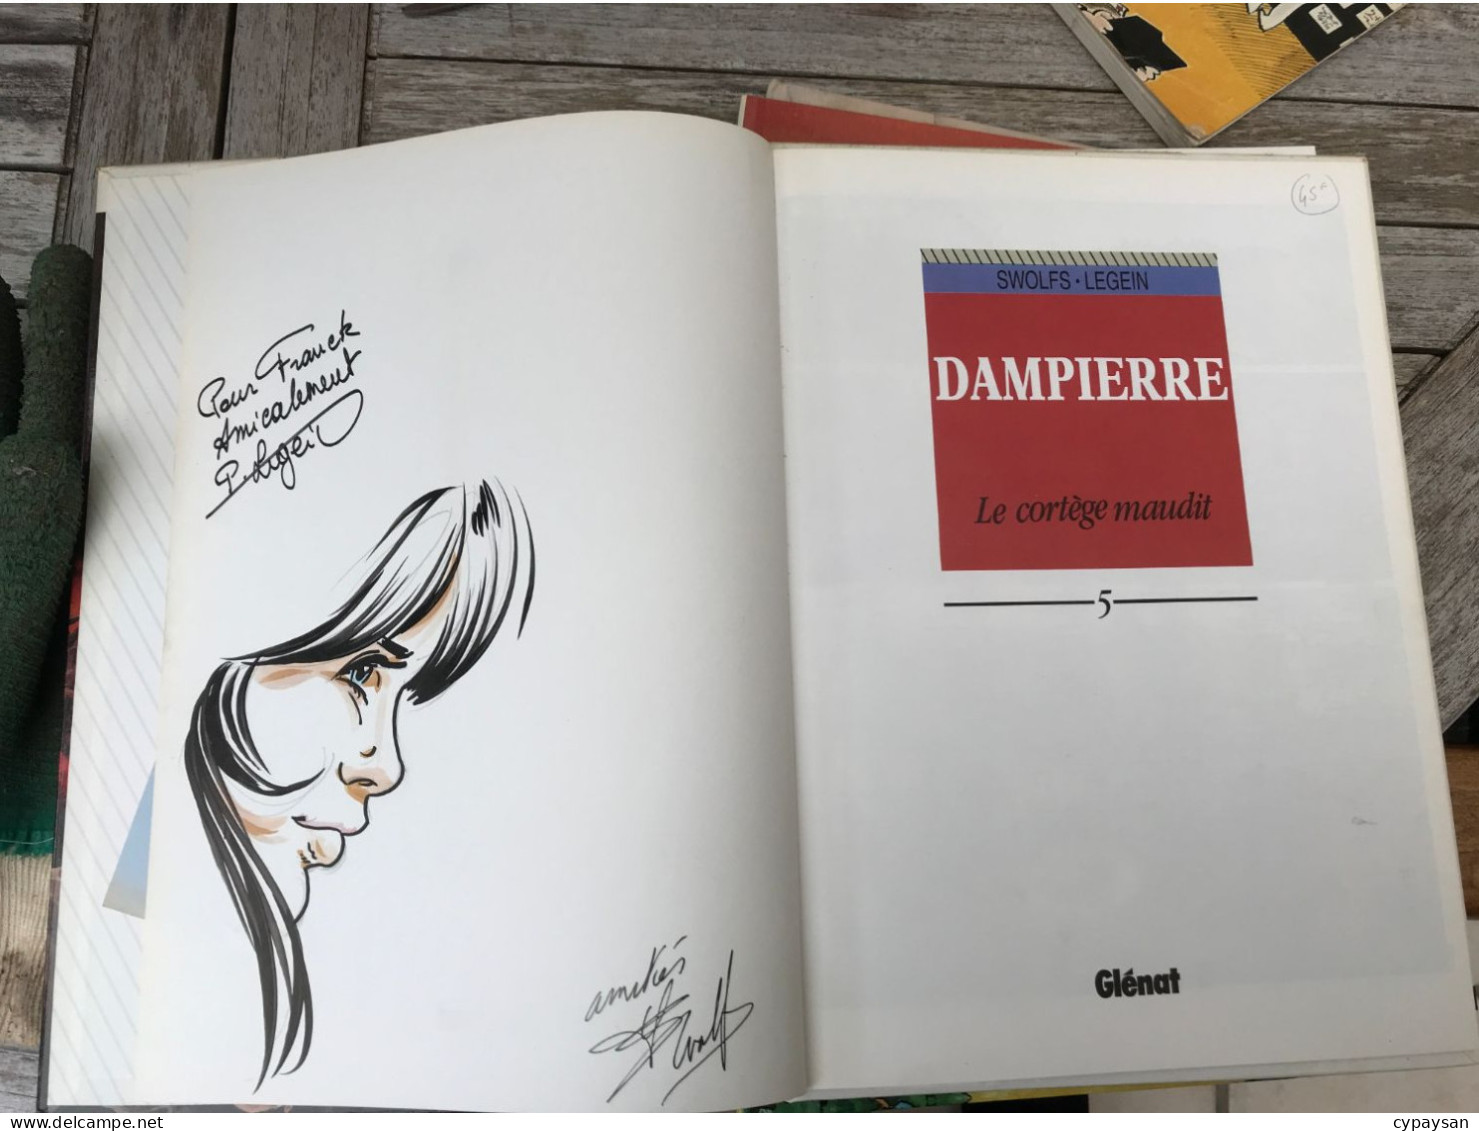 Dampierre 5 Le Cortège Maudit EO DEDICACE BE Glénat 09/1995 Swolfs Legein (BI2) - Autographs